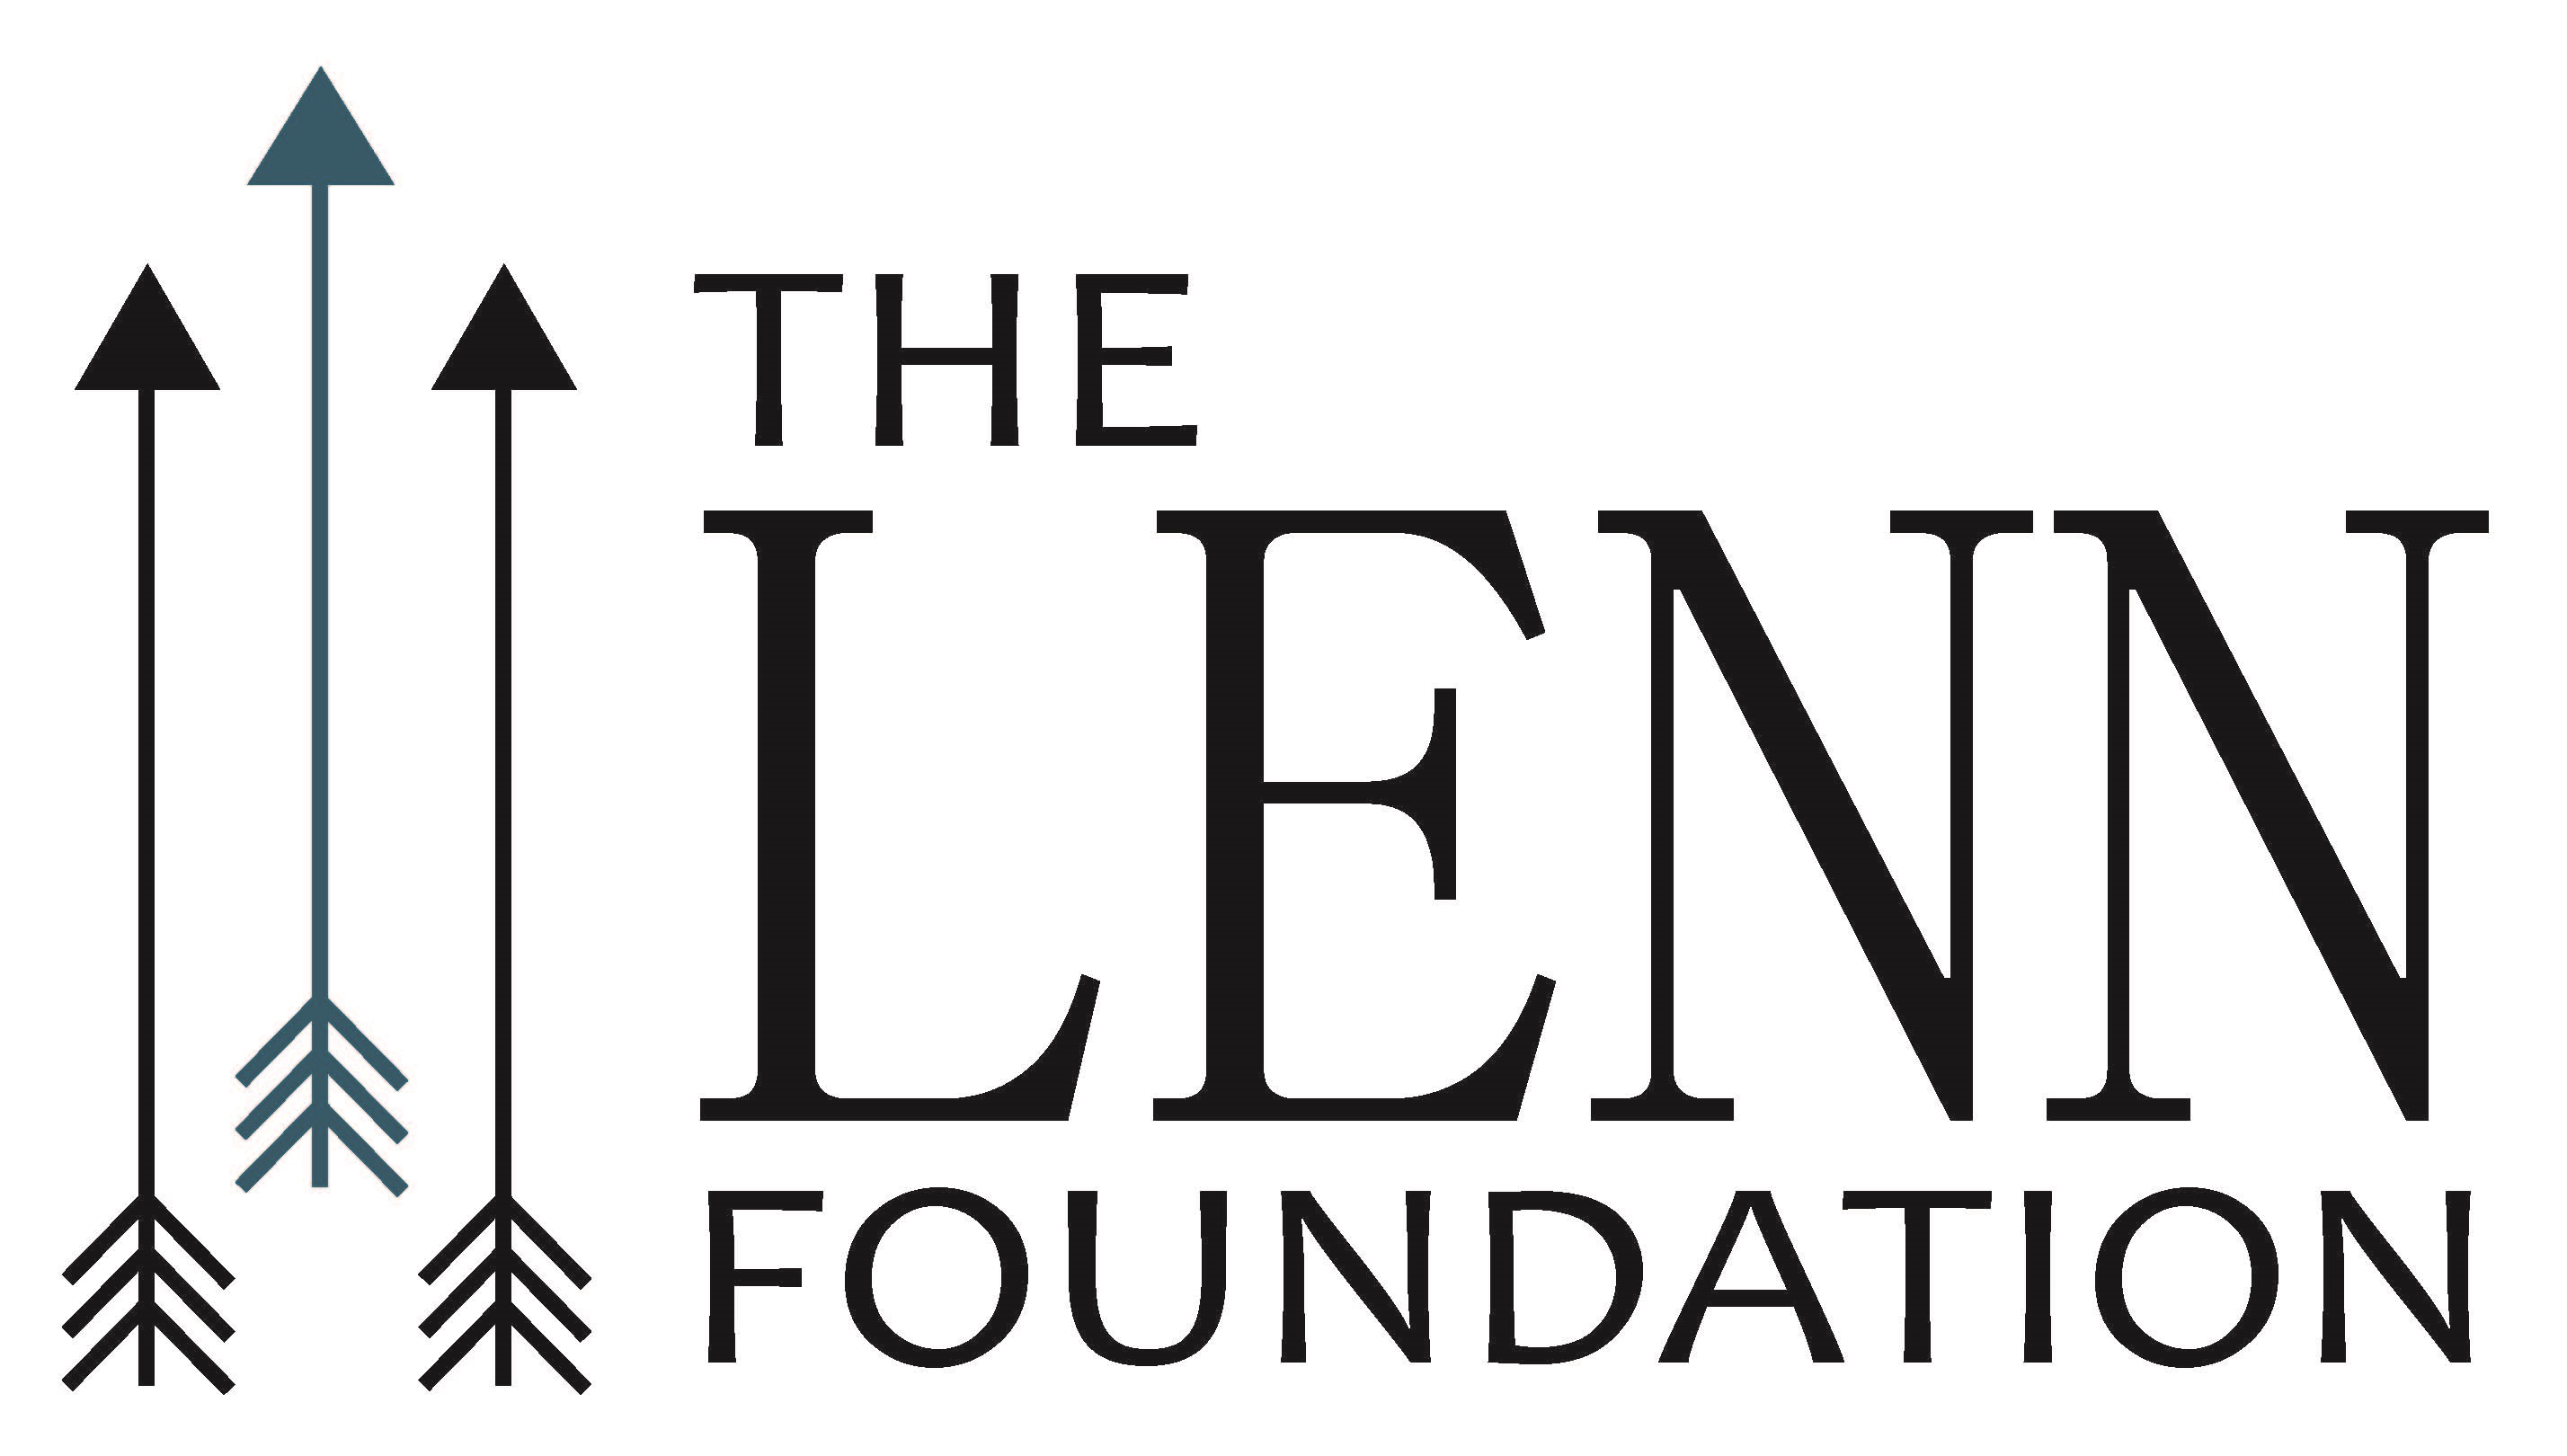 The LENN Foundation